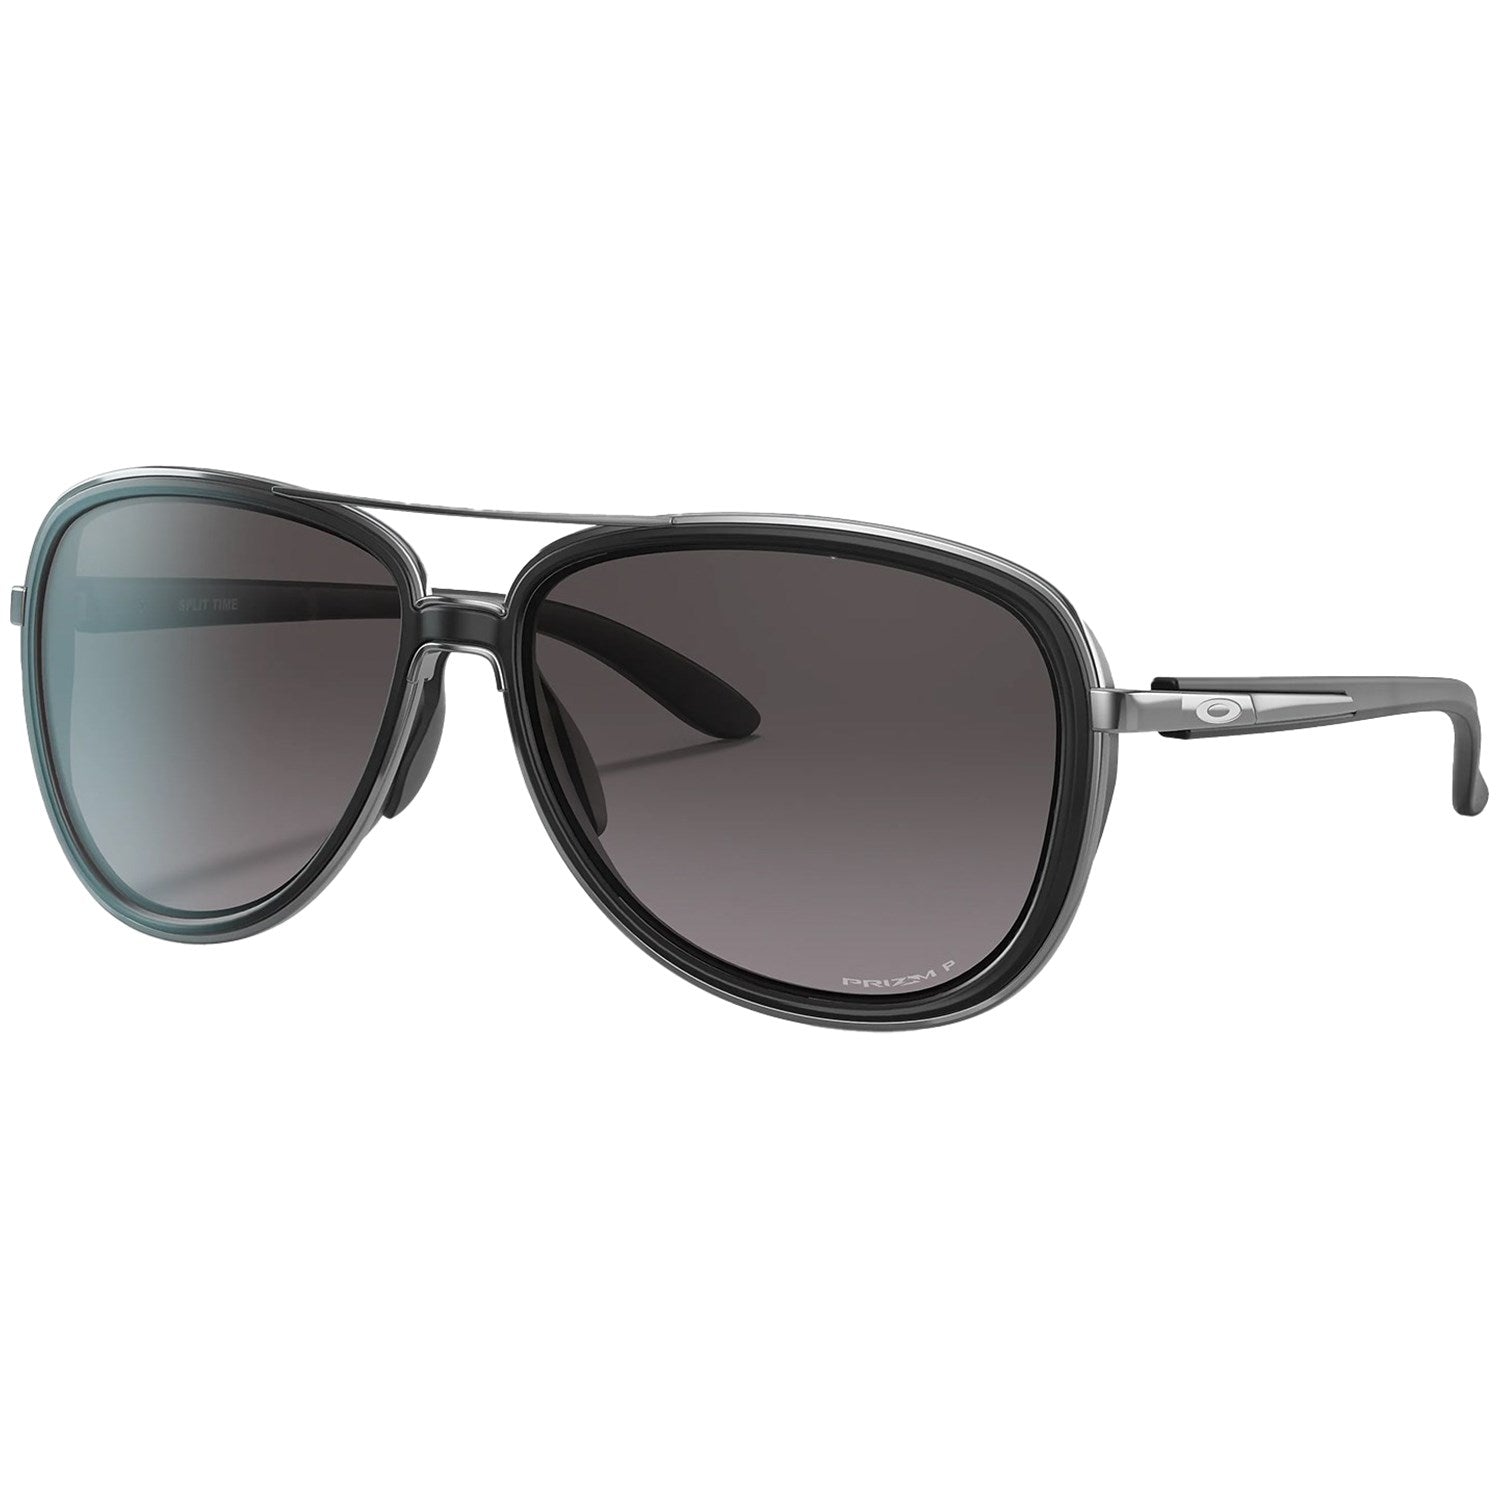 Oakley Split Time Sunglasses - Women's